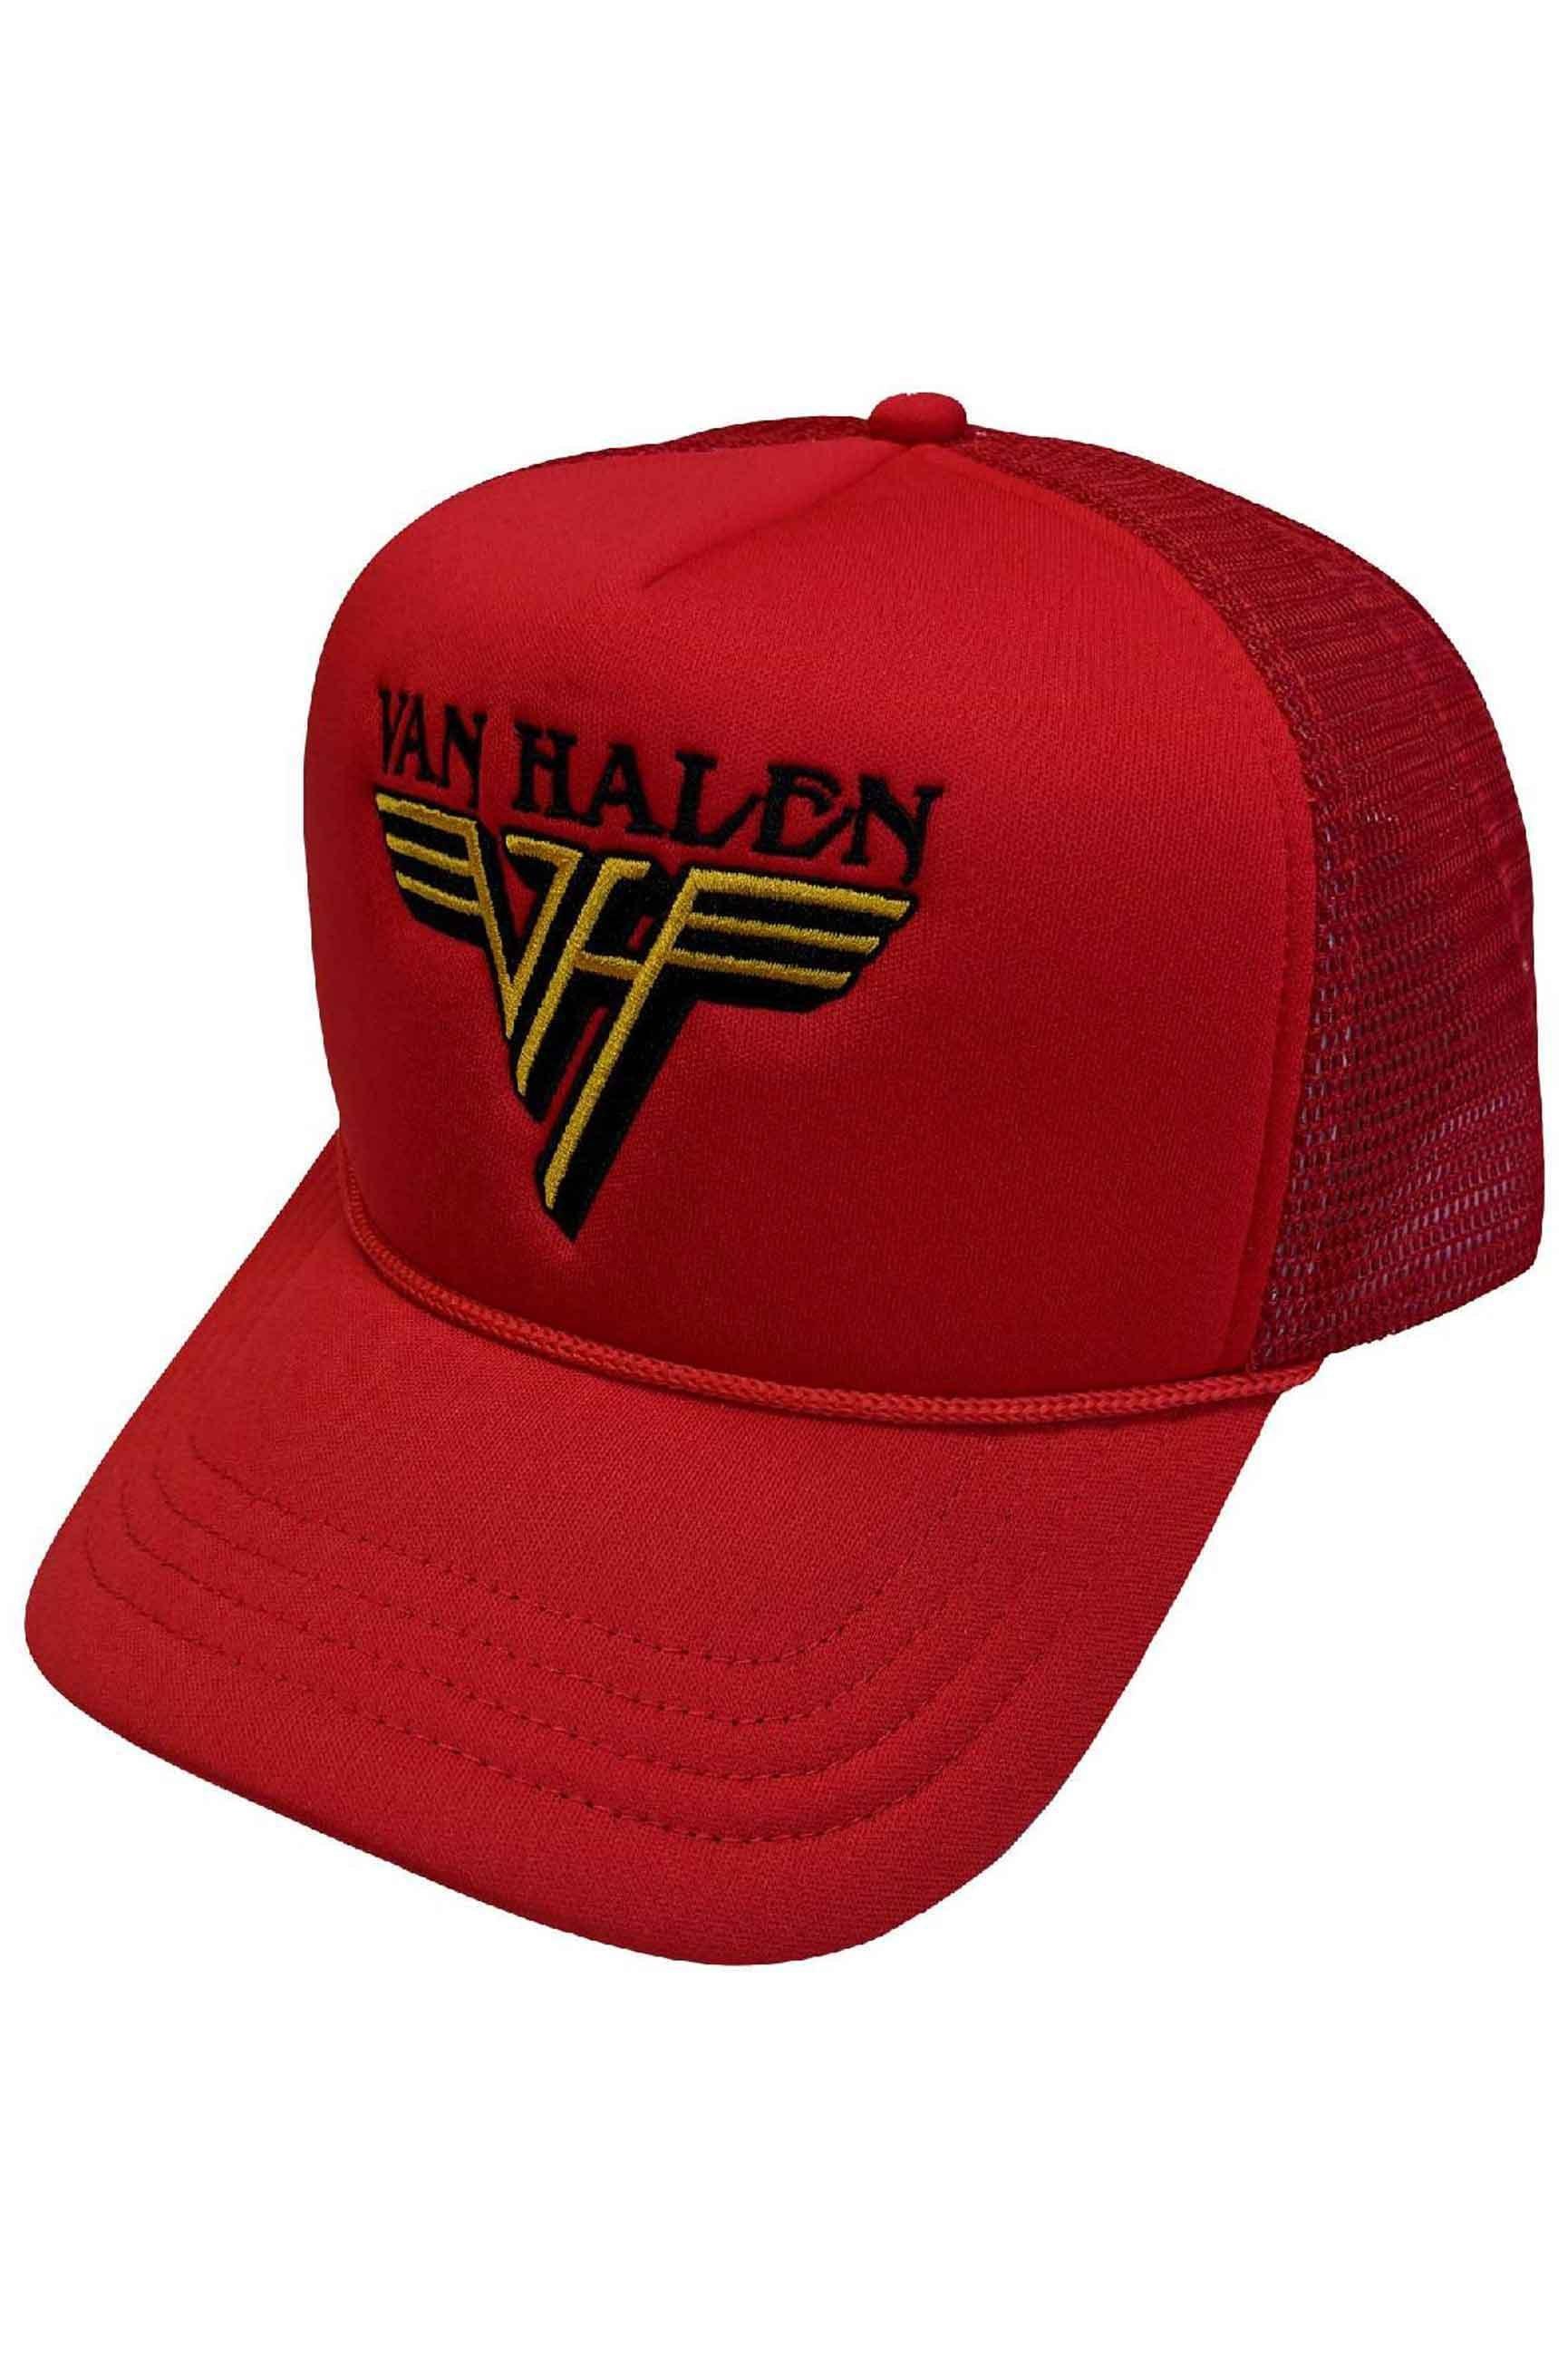 Бейсбольная кепка Trucker с текстовым ремешком и логотипом Van Halen, красный чехол mypads скелет в красном дыму для meizu v8 задняя панель накладка бампер